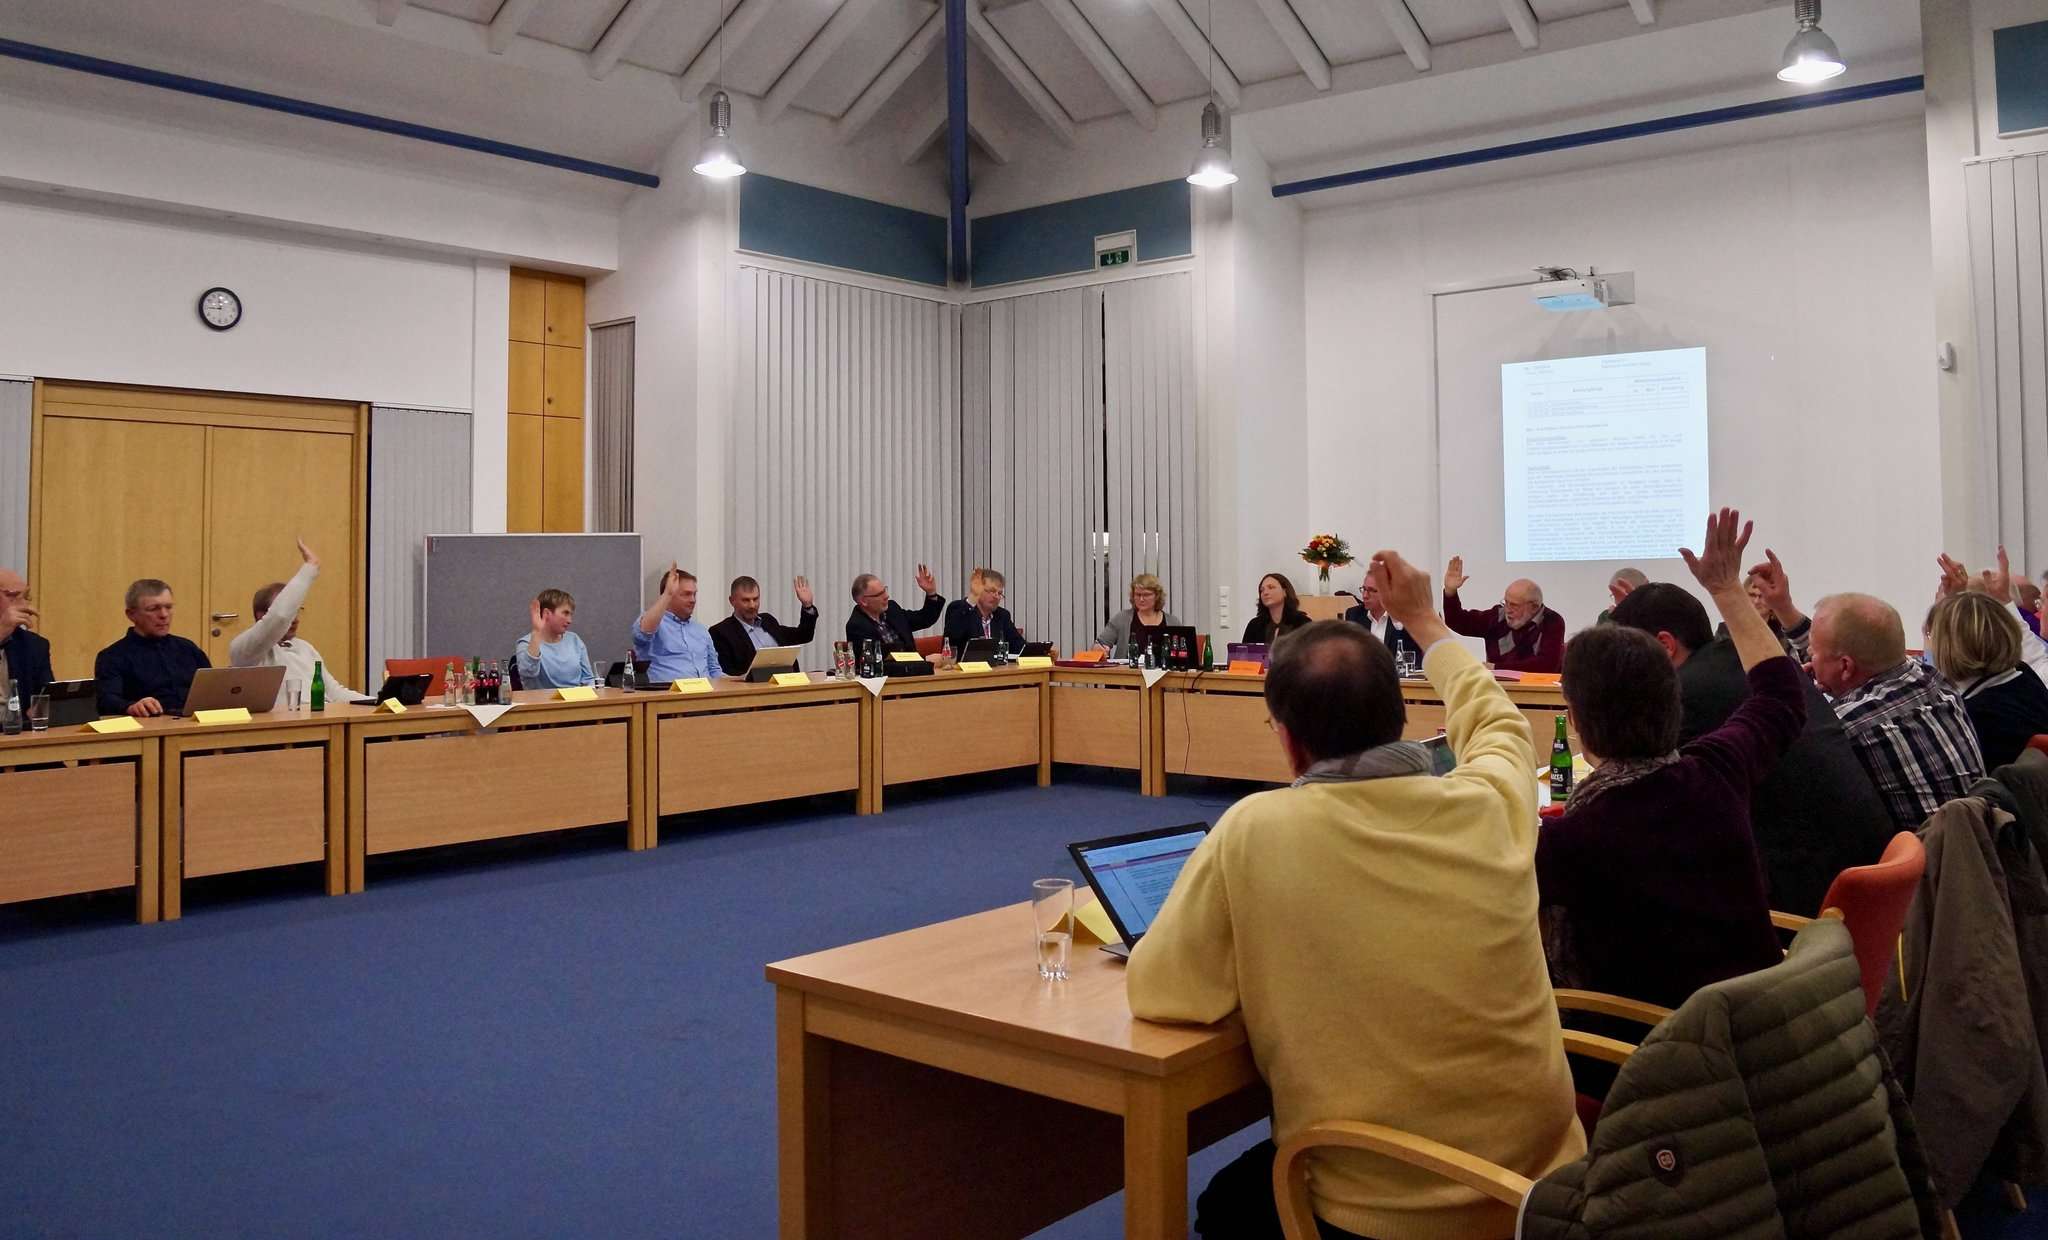 Viel Einstimmigkeit im Rat der Samtgemeinde, das Thema zur Förderung von Klimaschutzprojekten braucht indes noch einiges an weiterer Diskussion.